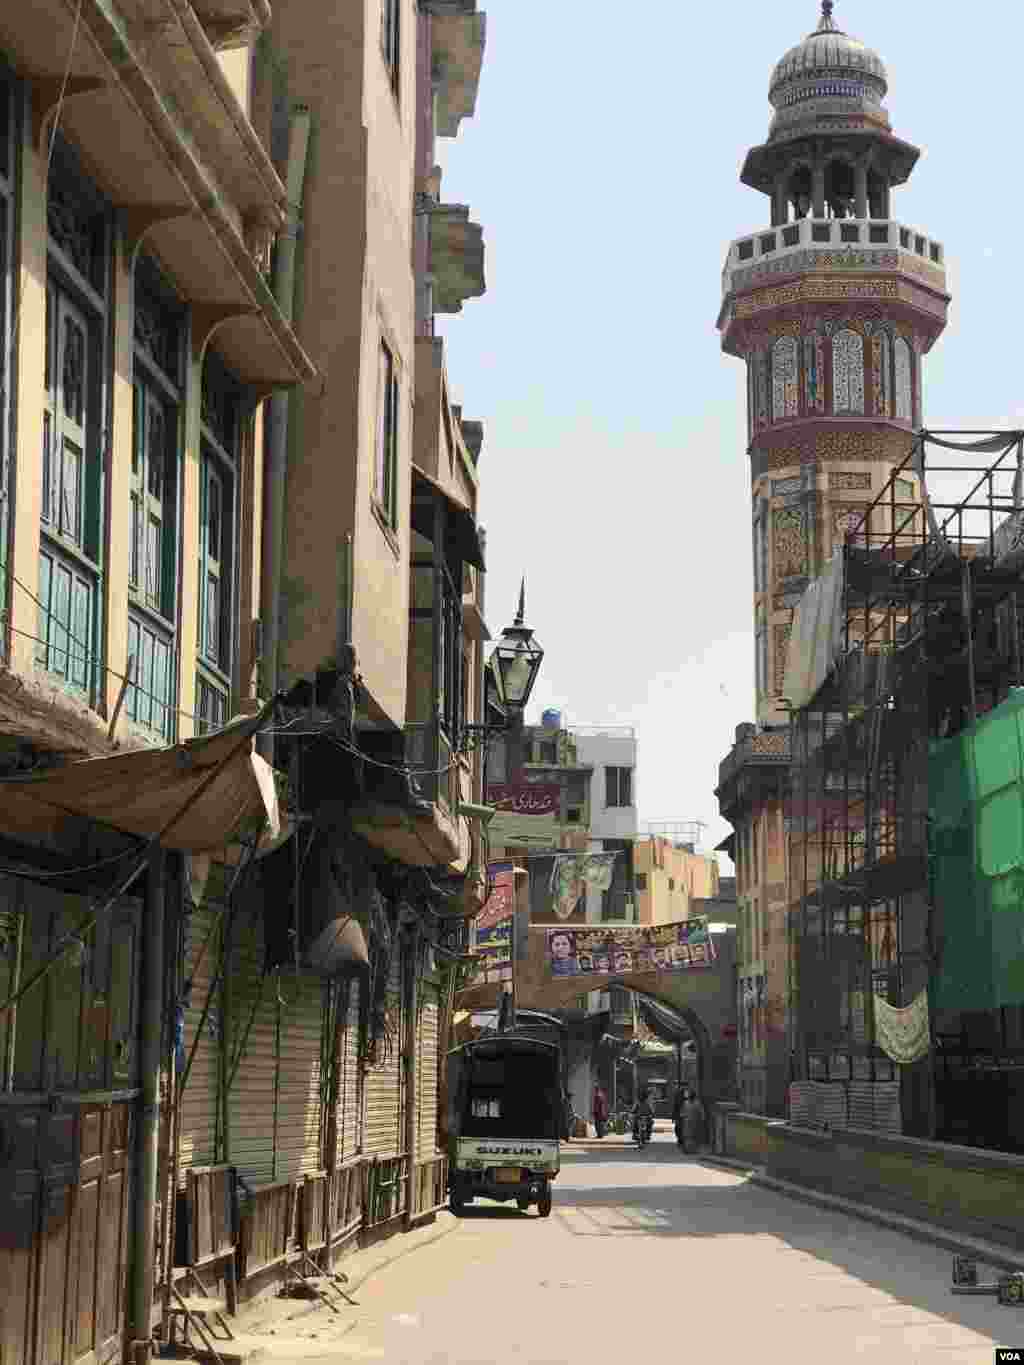 دہلی گیٹ میں واقع مسجد&nbsp;وزیر&nbsp;خان&nbsp;سے&nbsp;متصل گھر اور دکانیں۔ 